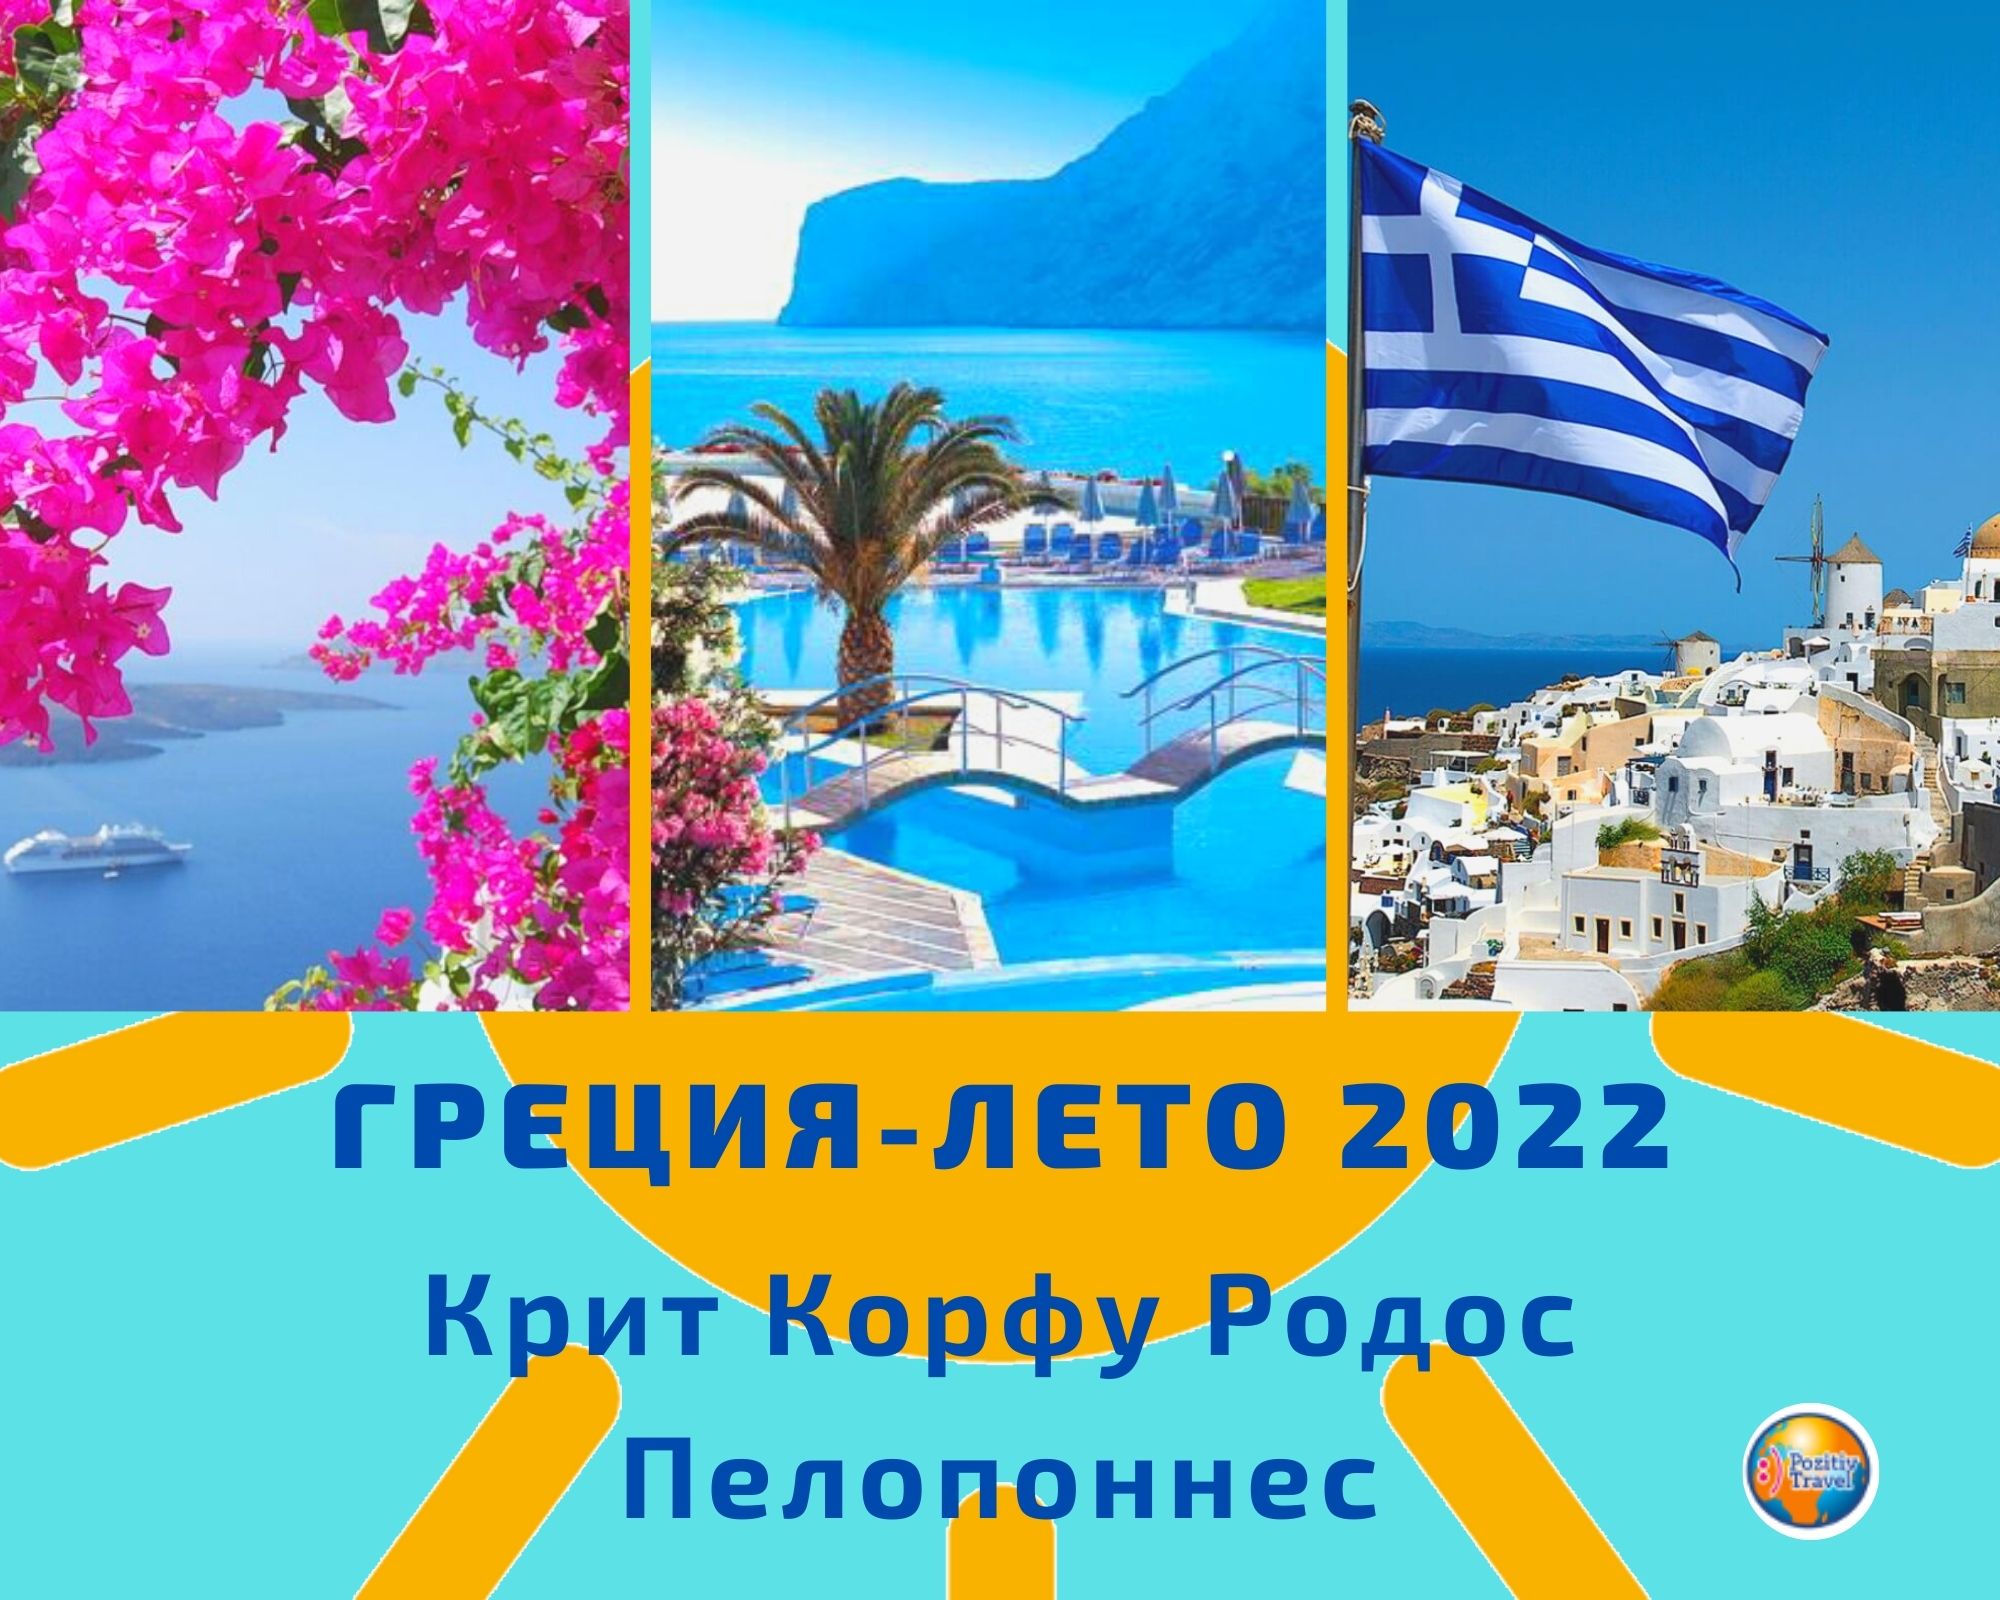 Курорты и пляжи в греции: крит, родос или халкидики. что выбрать?